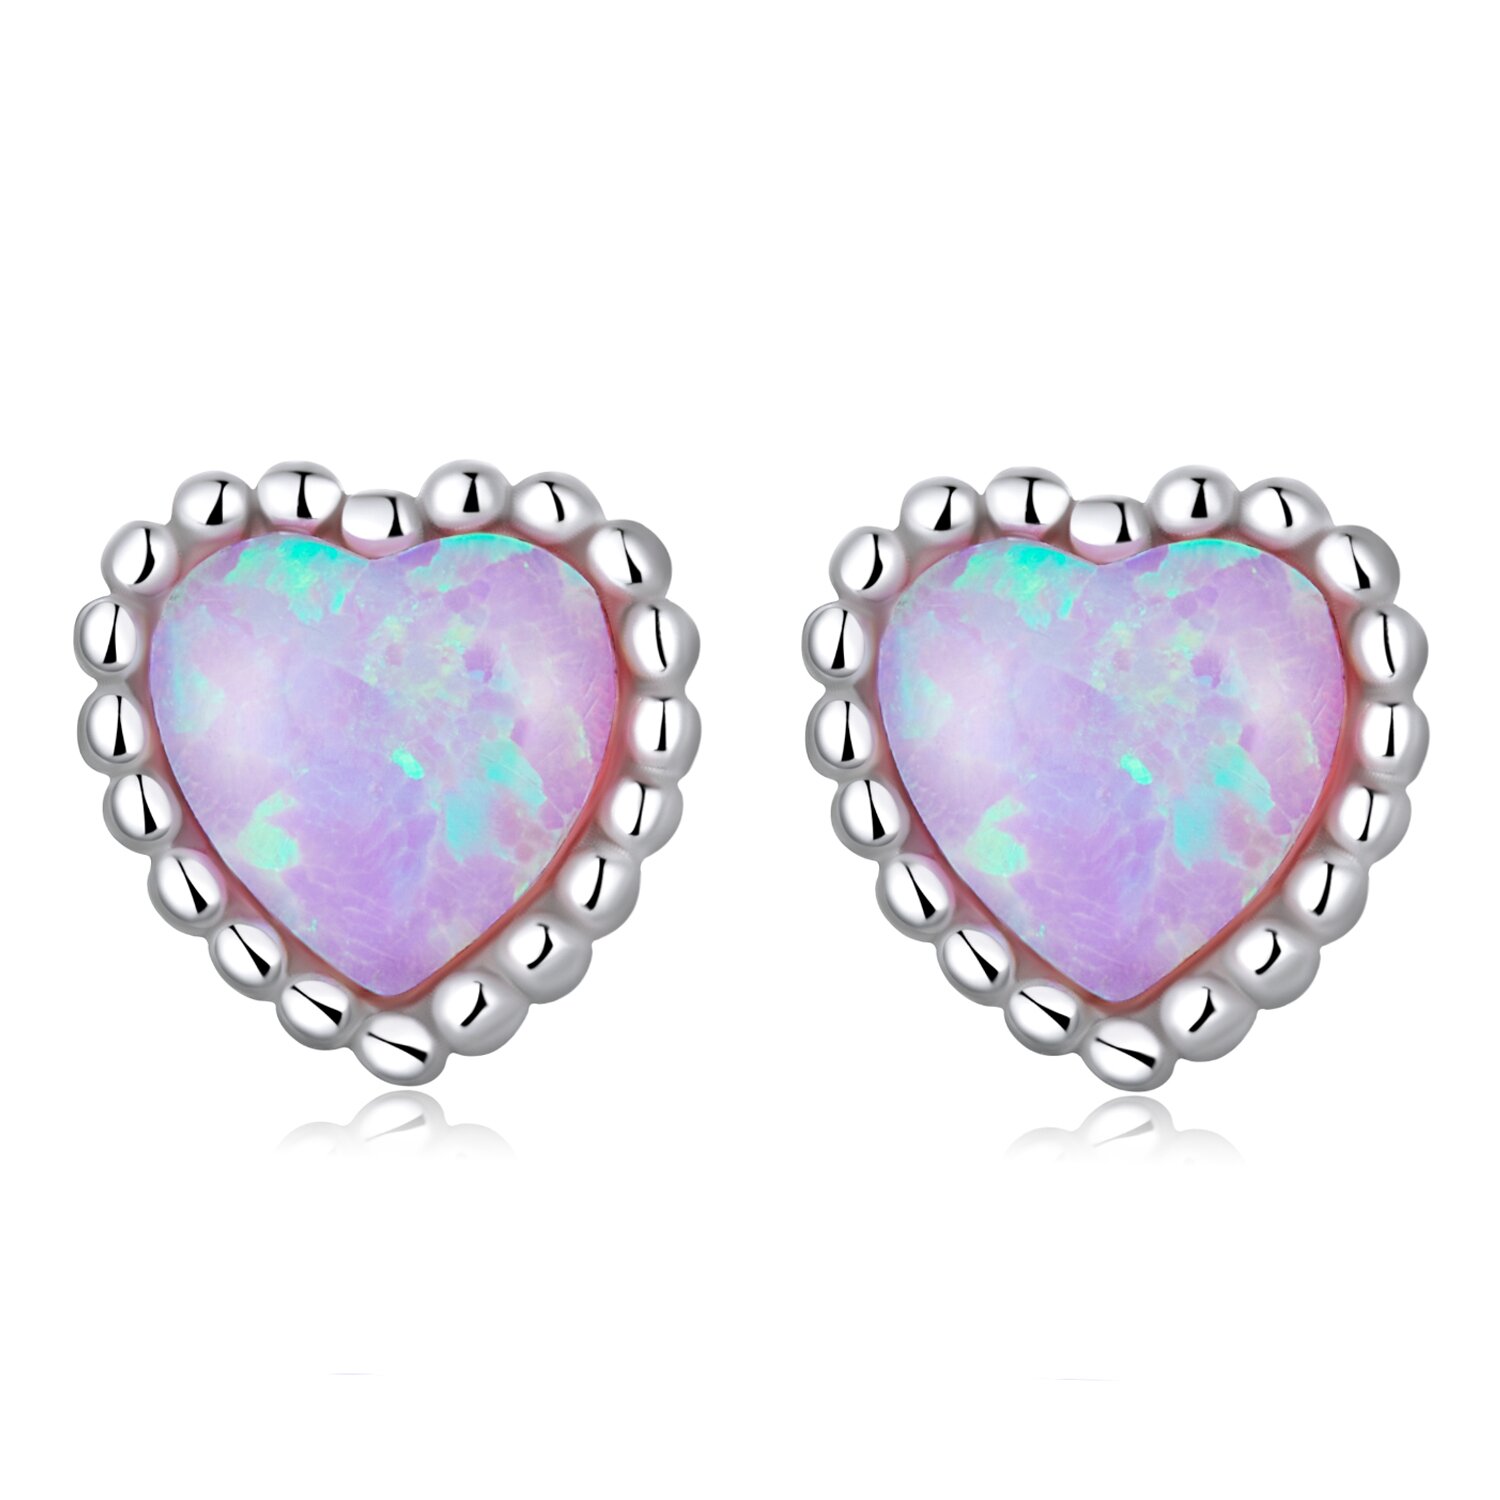 Cercei din argint Shining Opal Heart la pret fara cncurenta